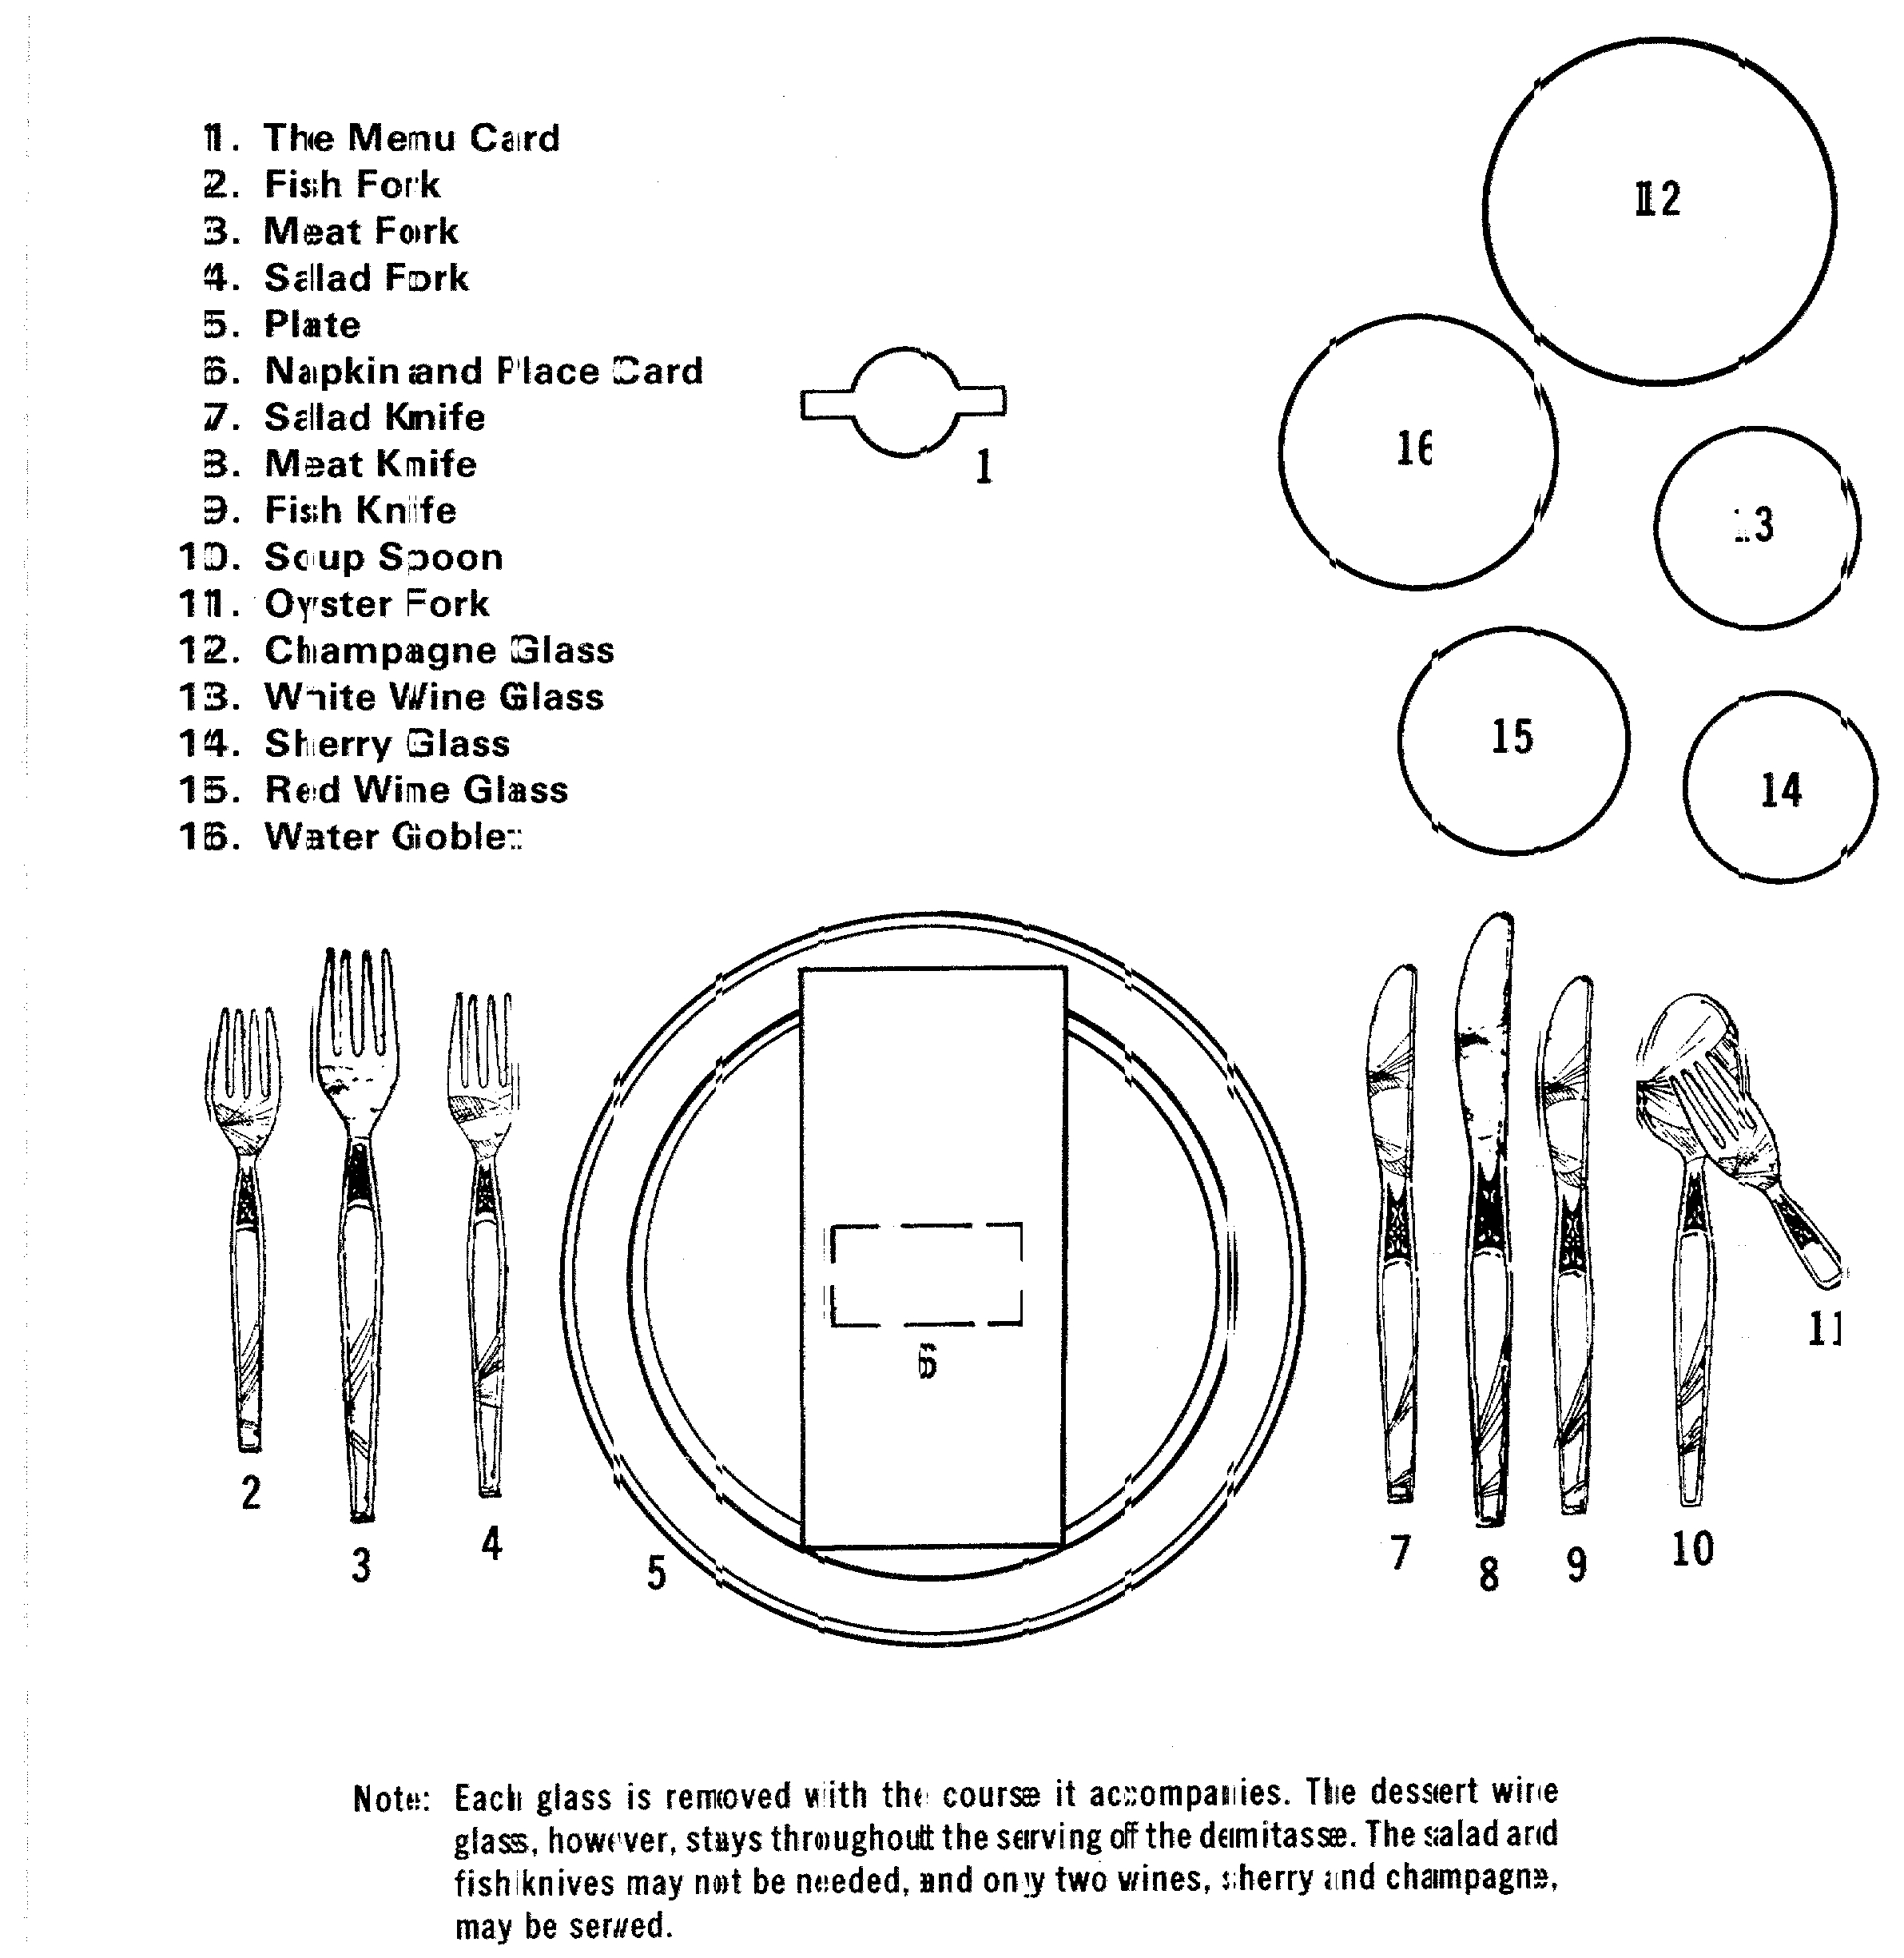 Table Setting Diagram 51 Table Setting Diagrams Elegant Party Ideas Asuntospublicos